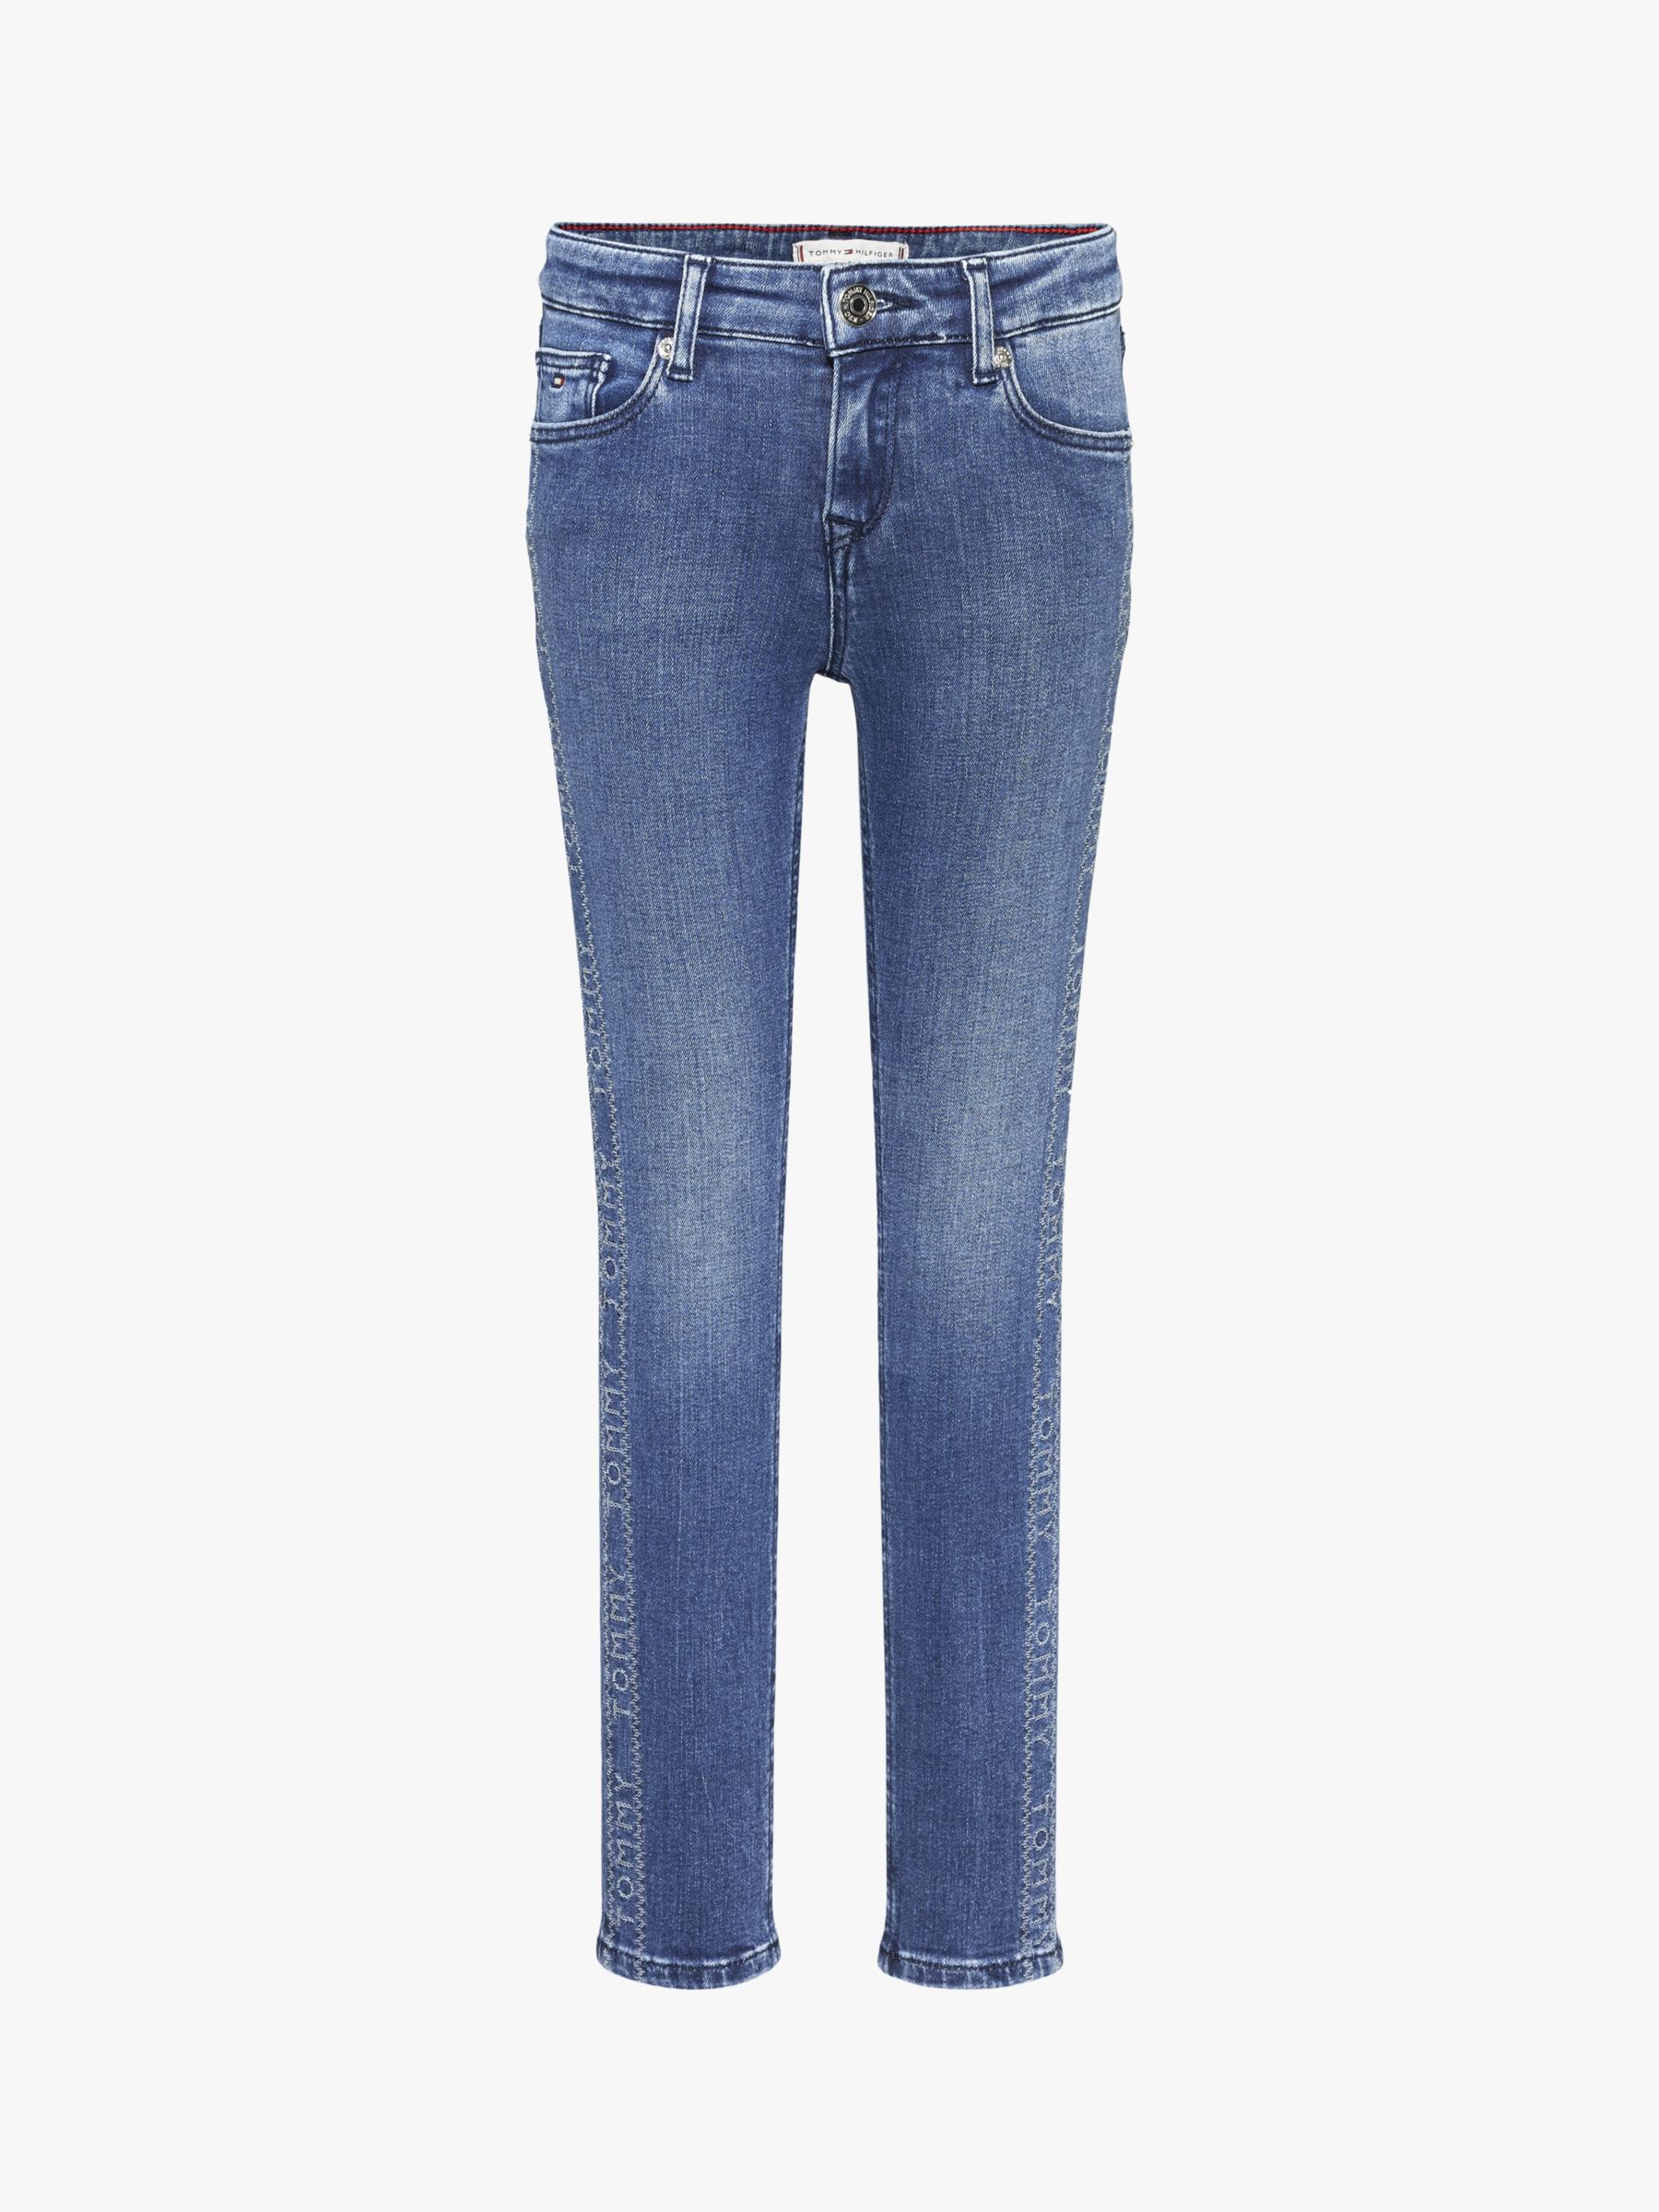 Image of Tommy Hilfiger Girls Skinny Jeans Blue Denim